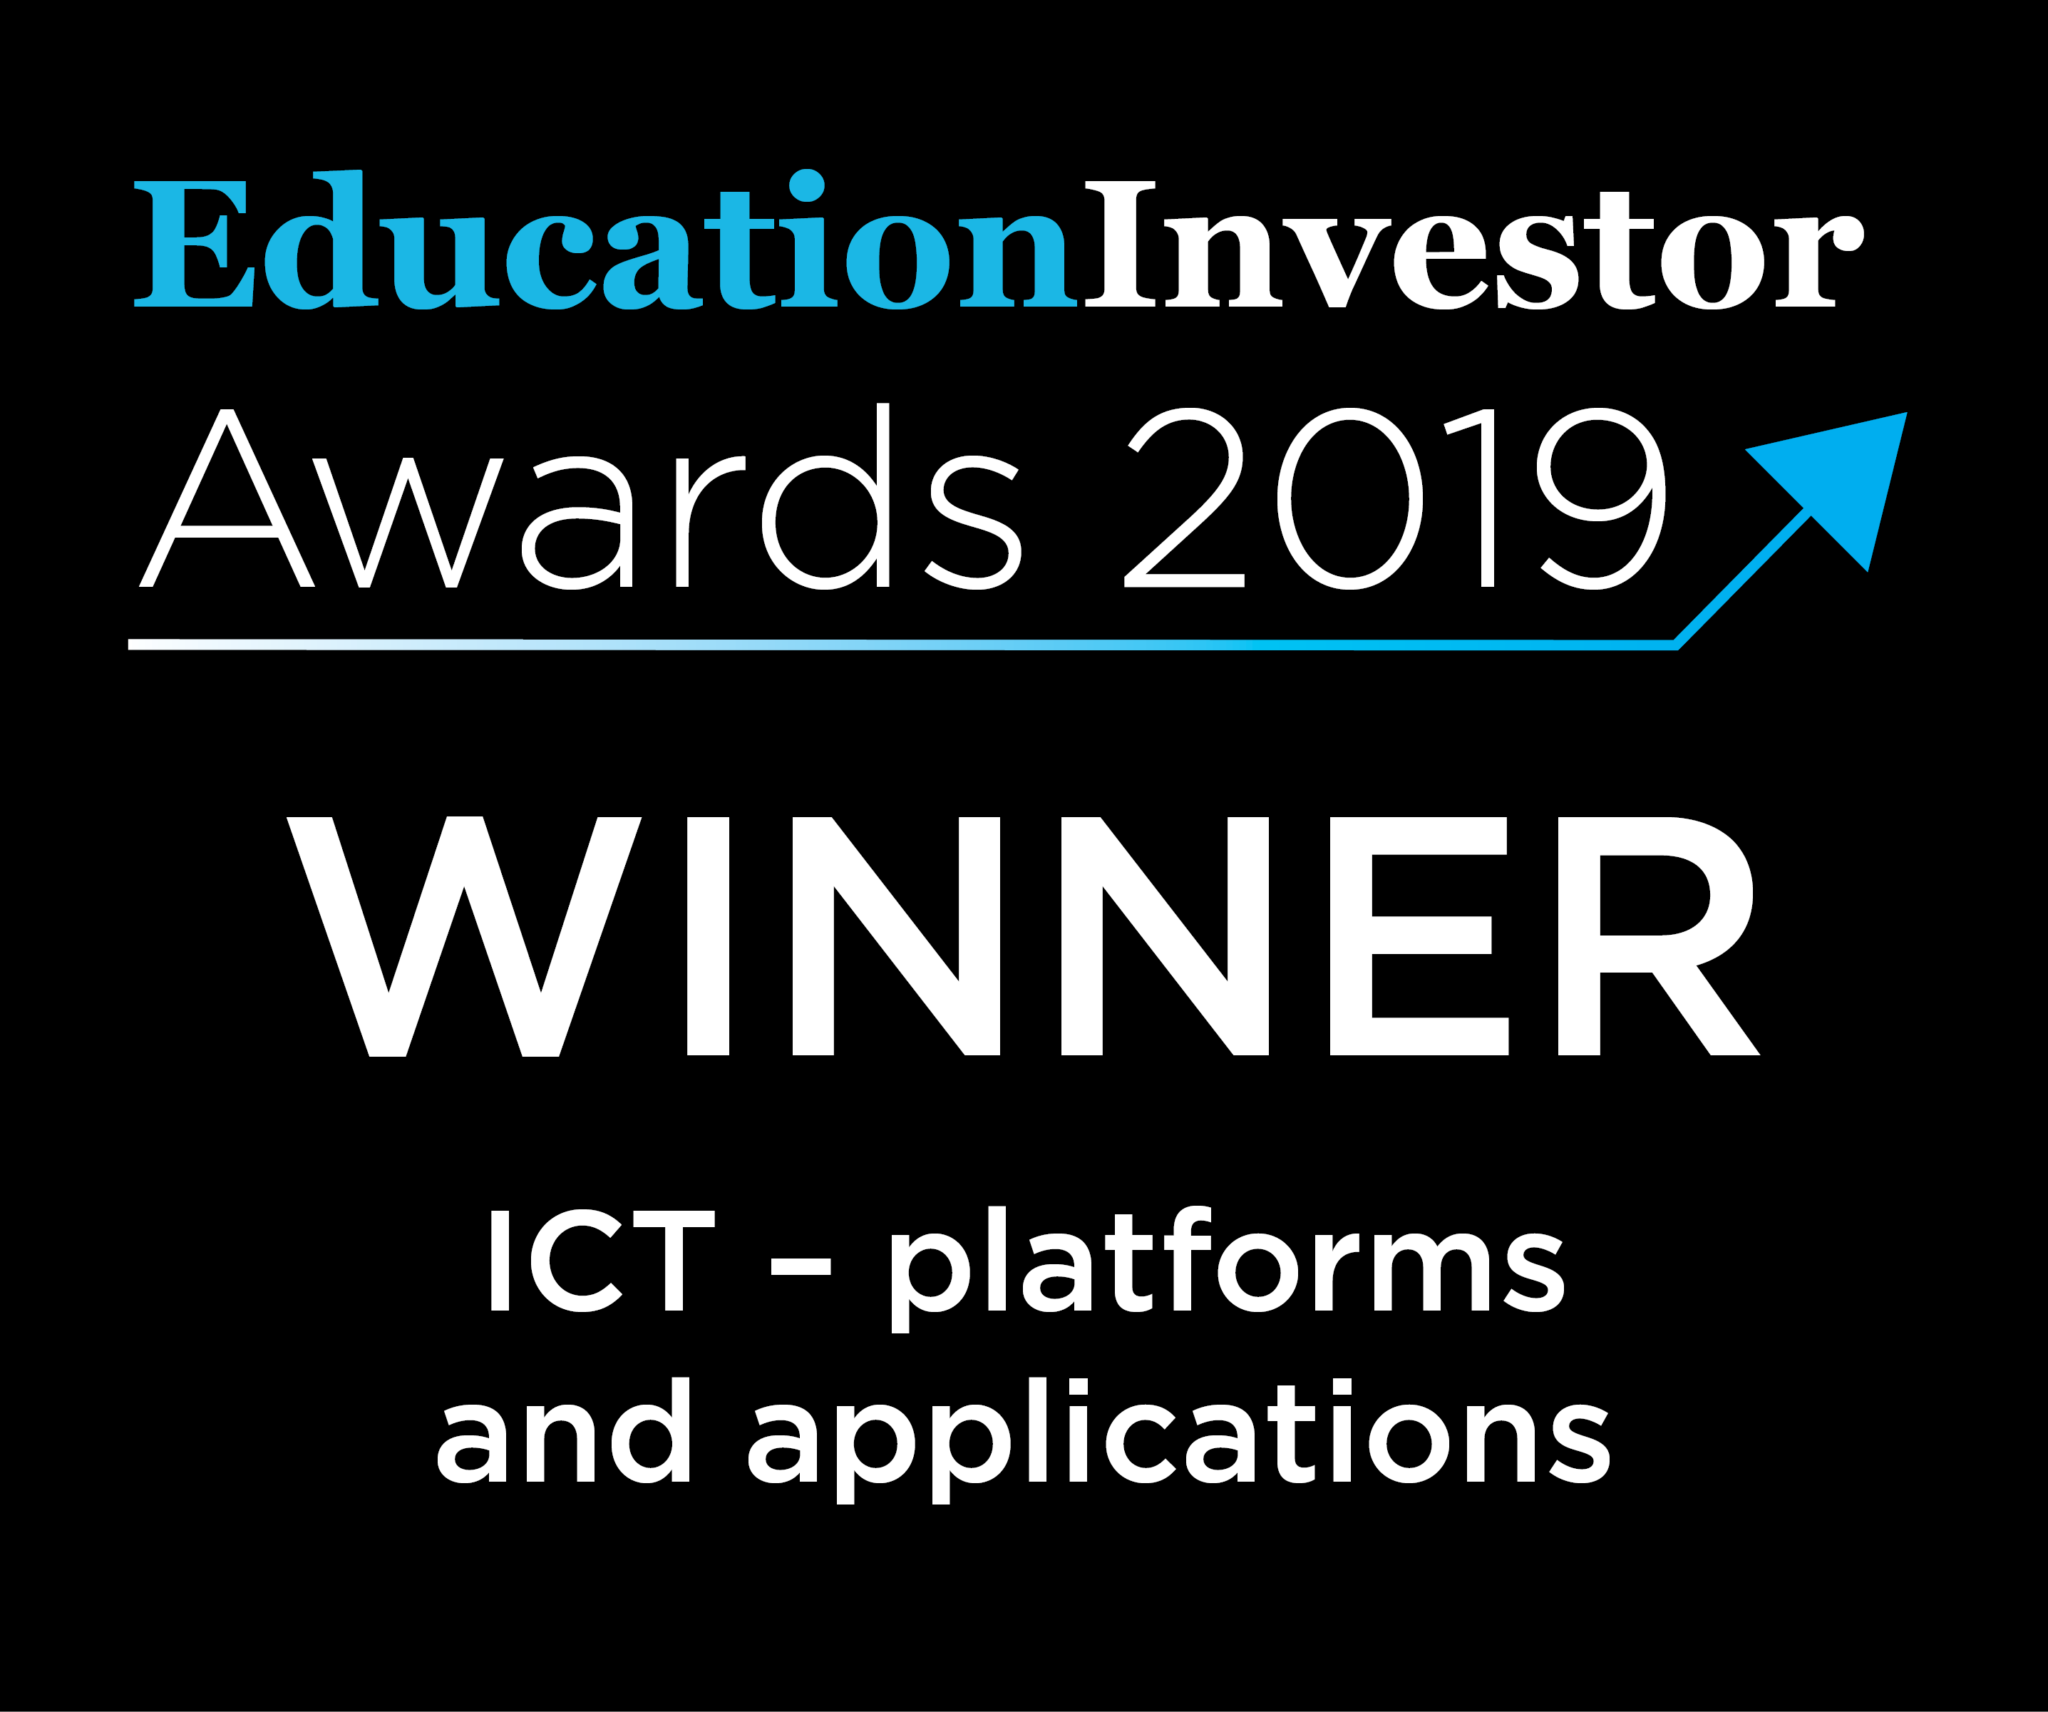 EducationInvestor Awards 2019 winner